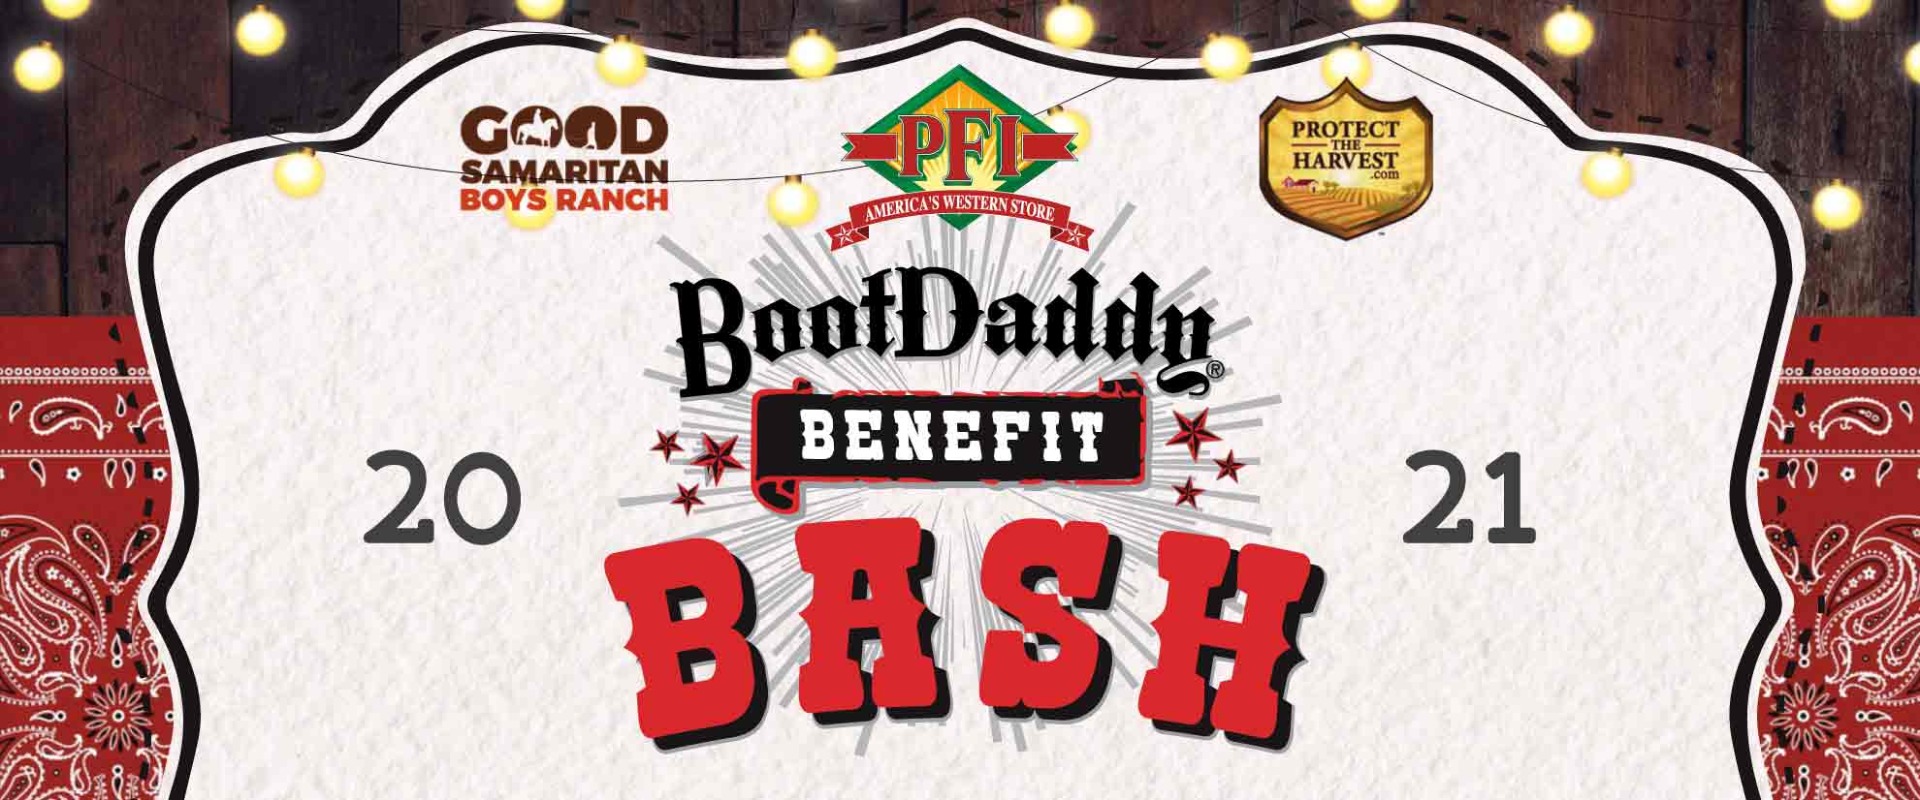 BootDaddy Benefit Bash